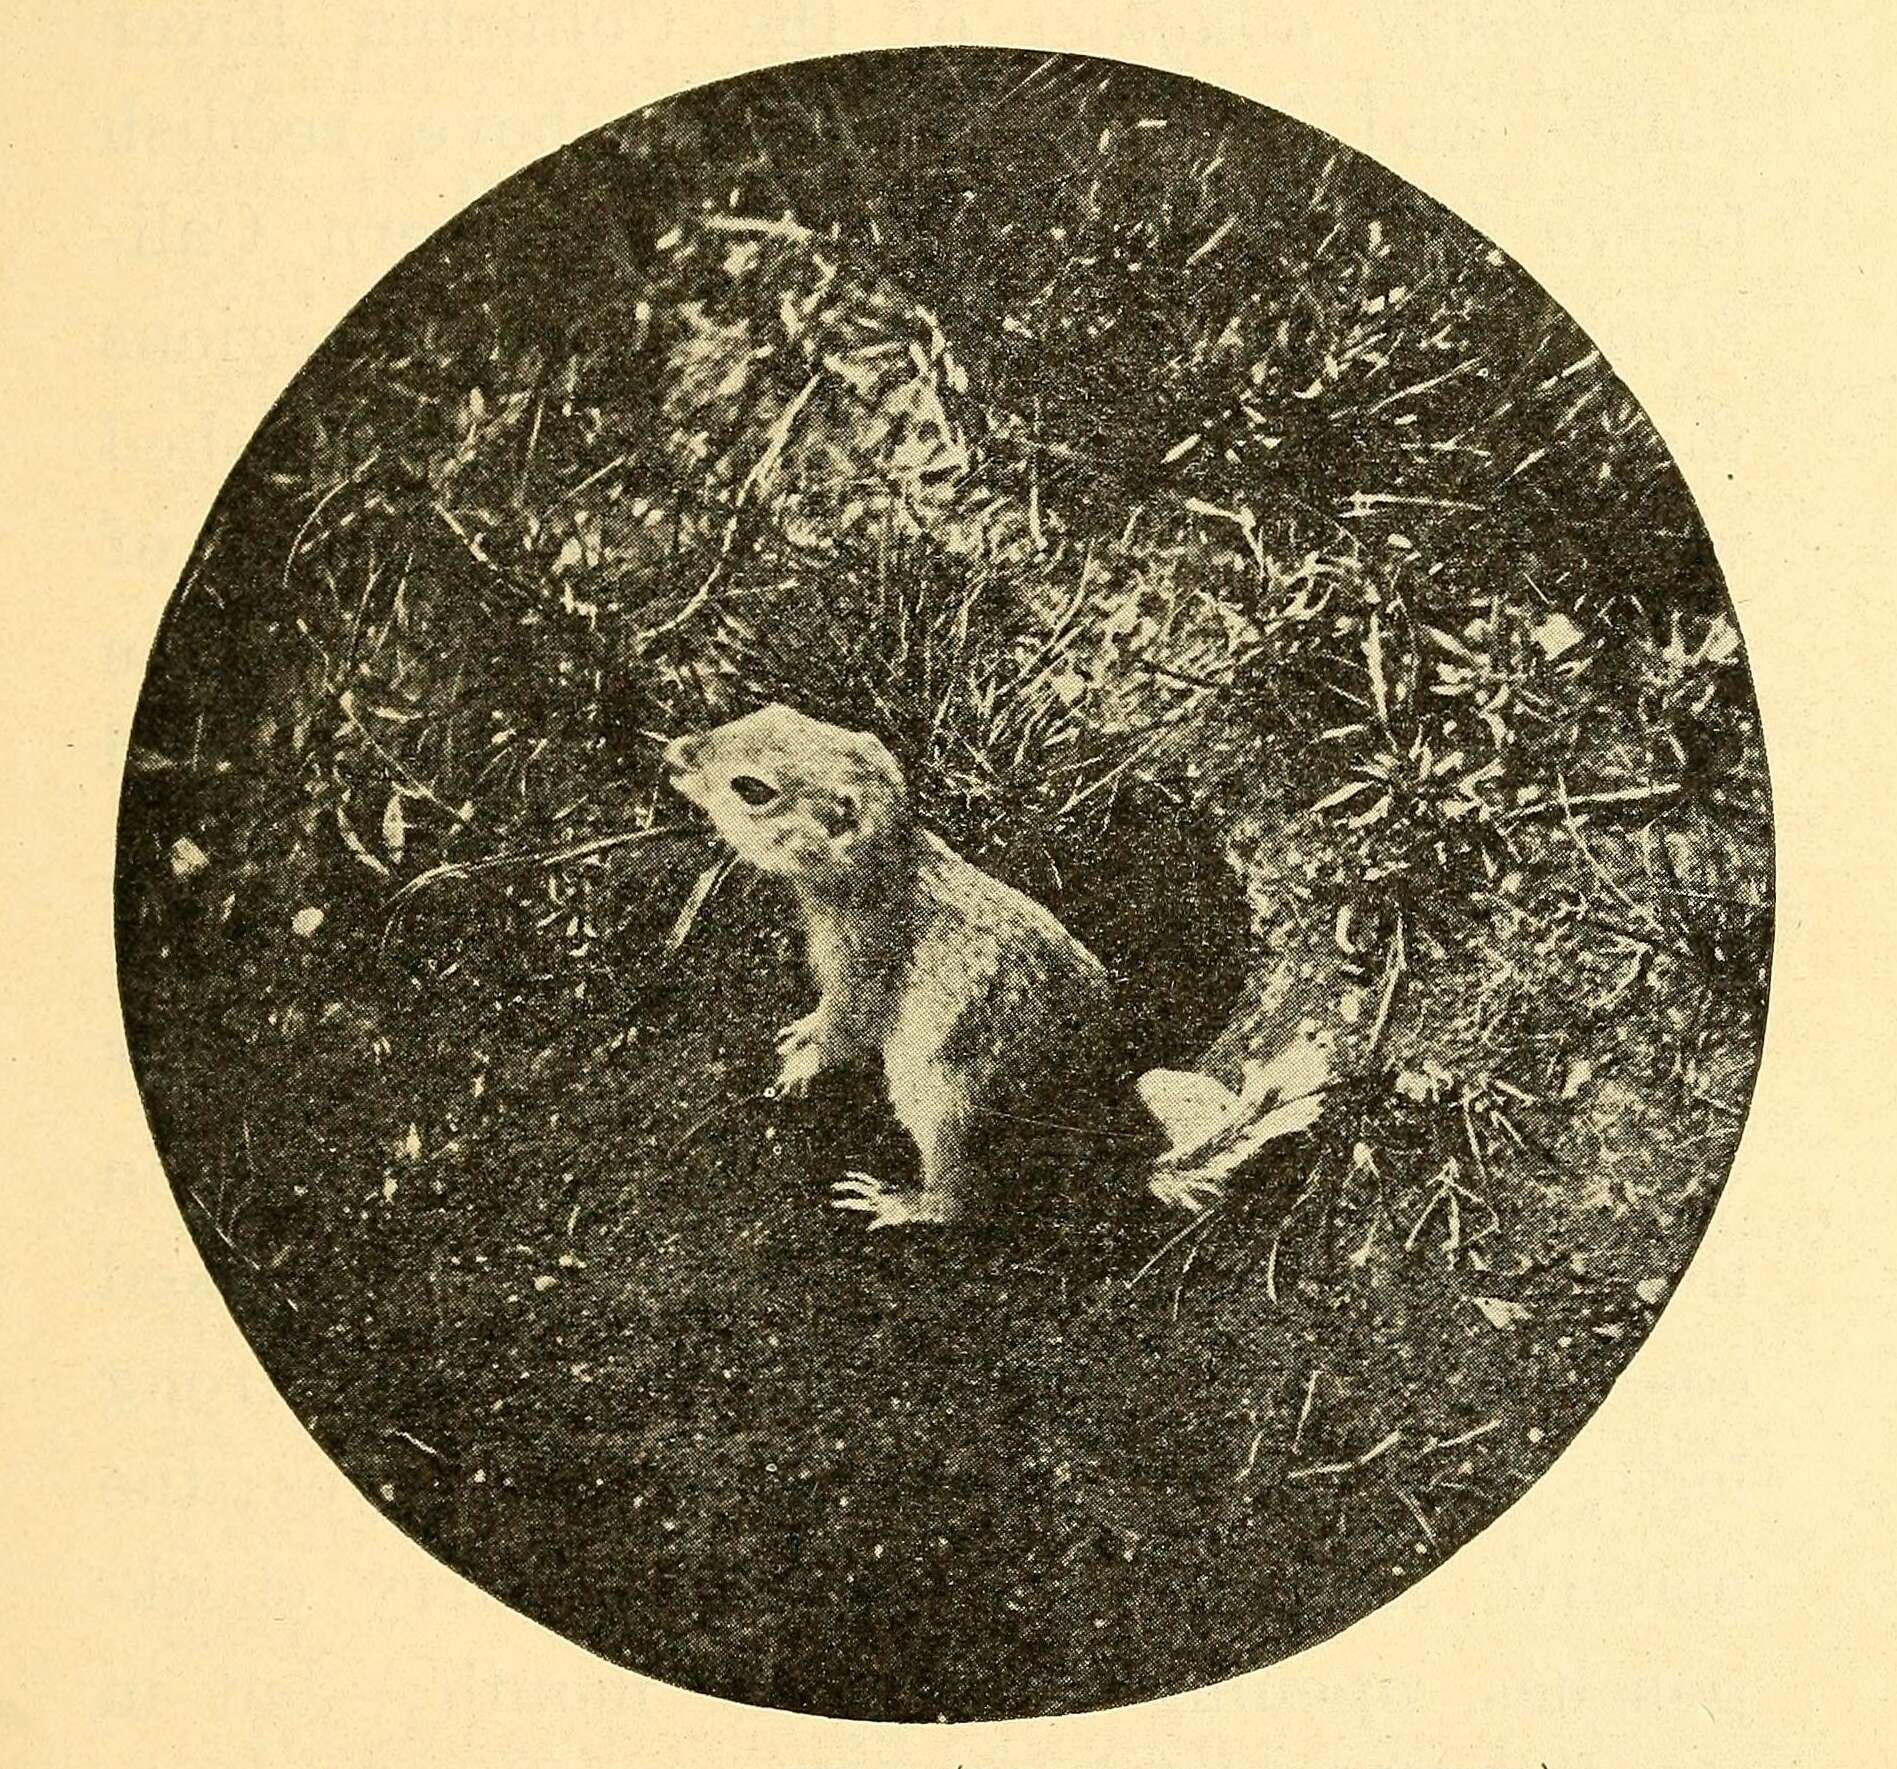 Image of Northern Pocket Gopher